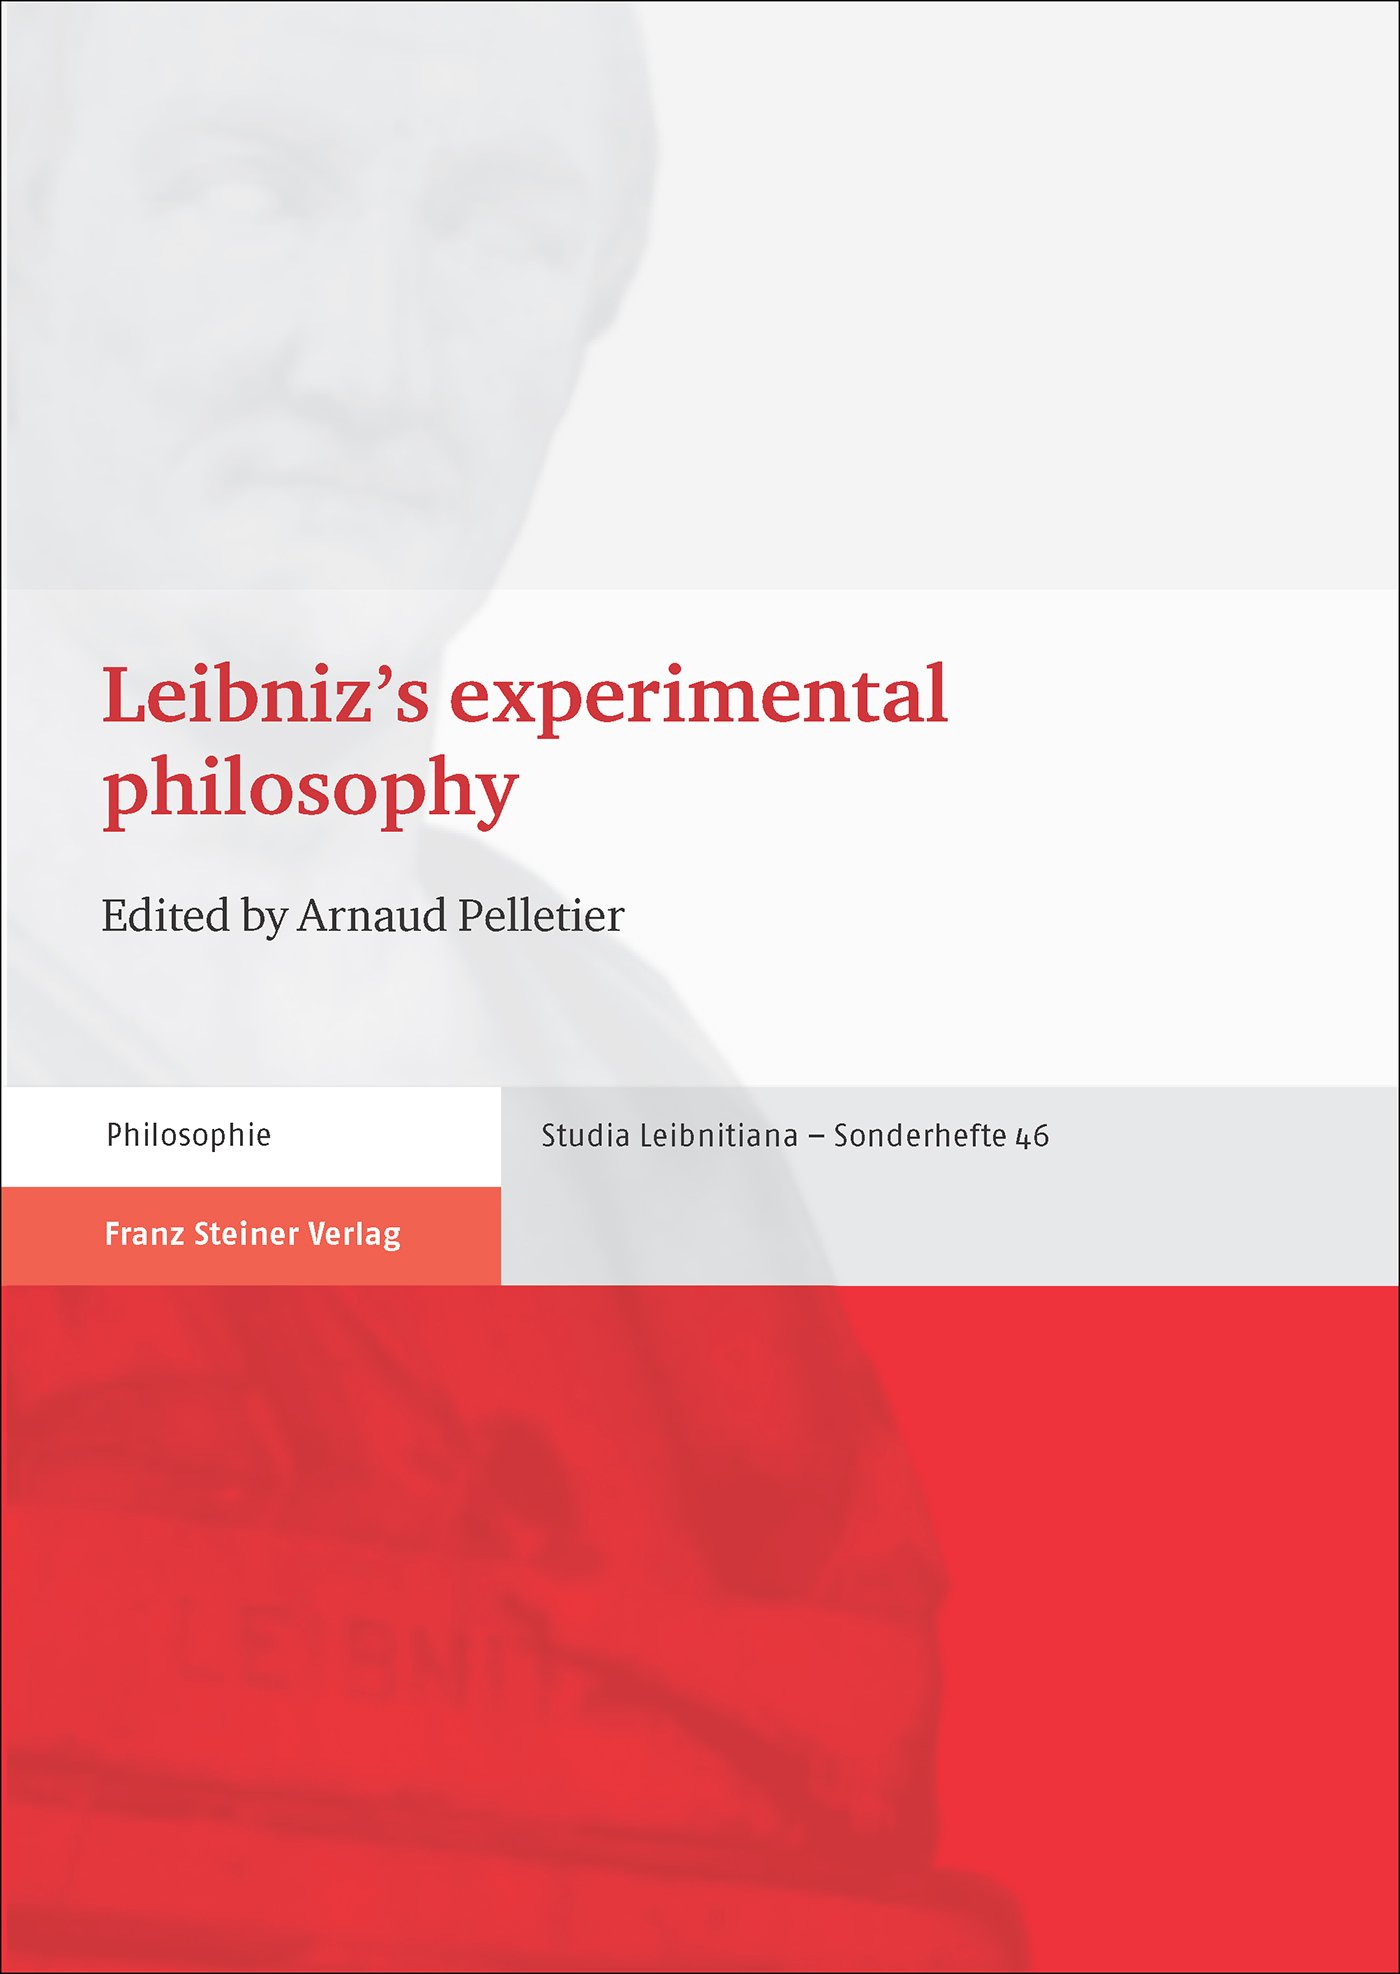 Leibniz's experimental philosophy